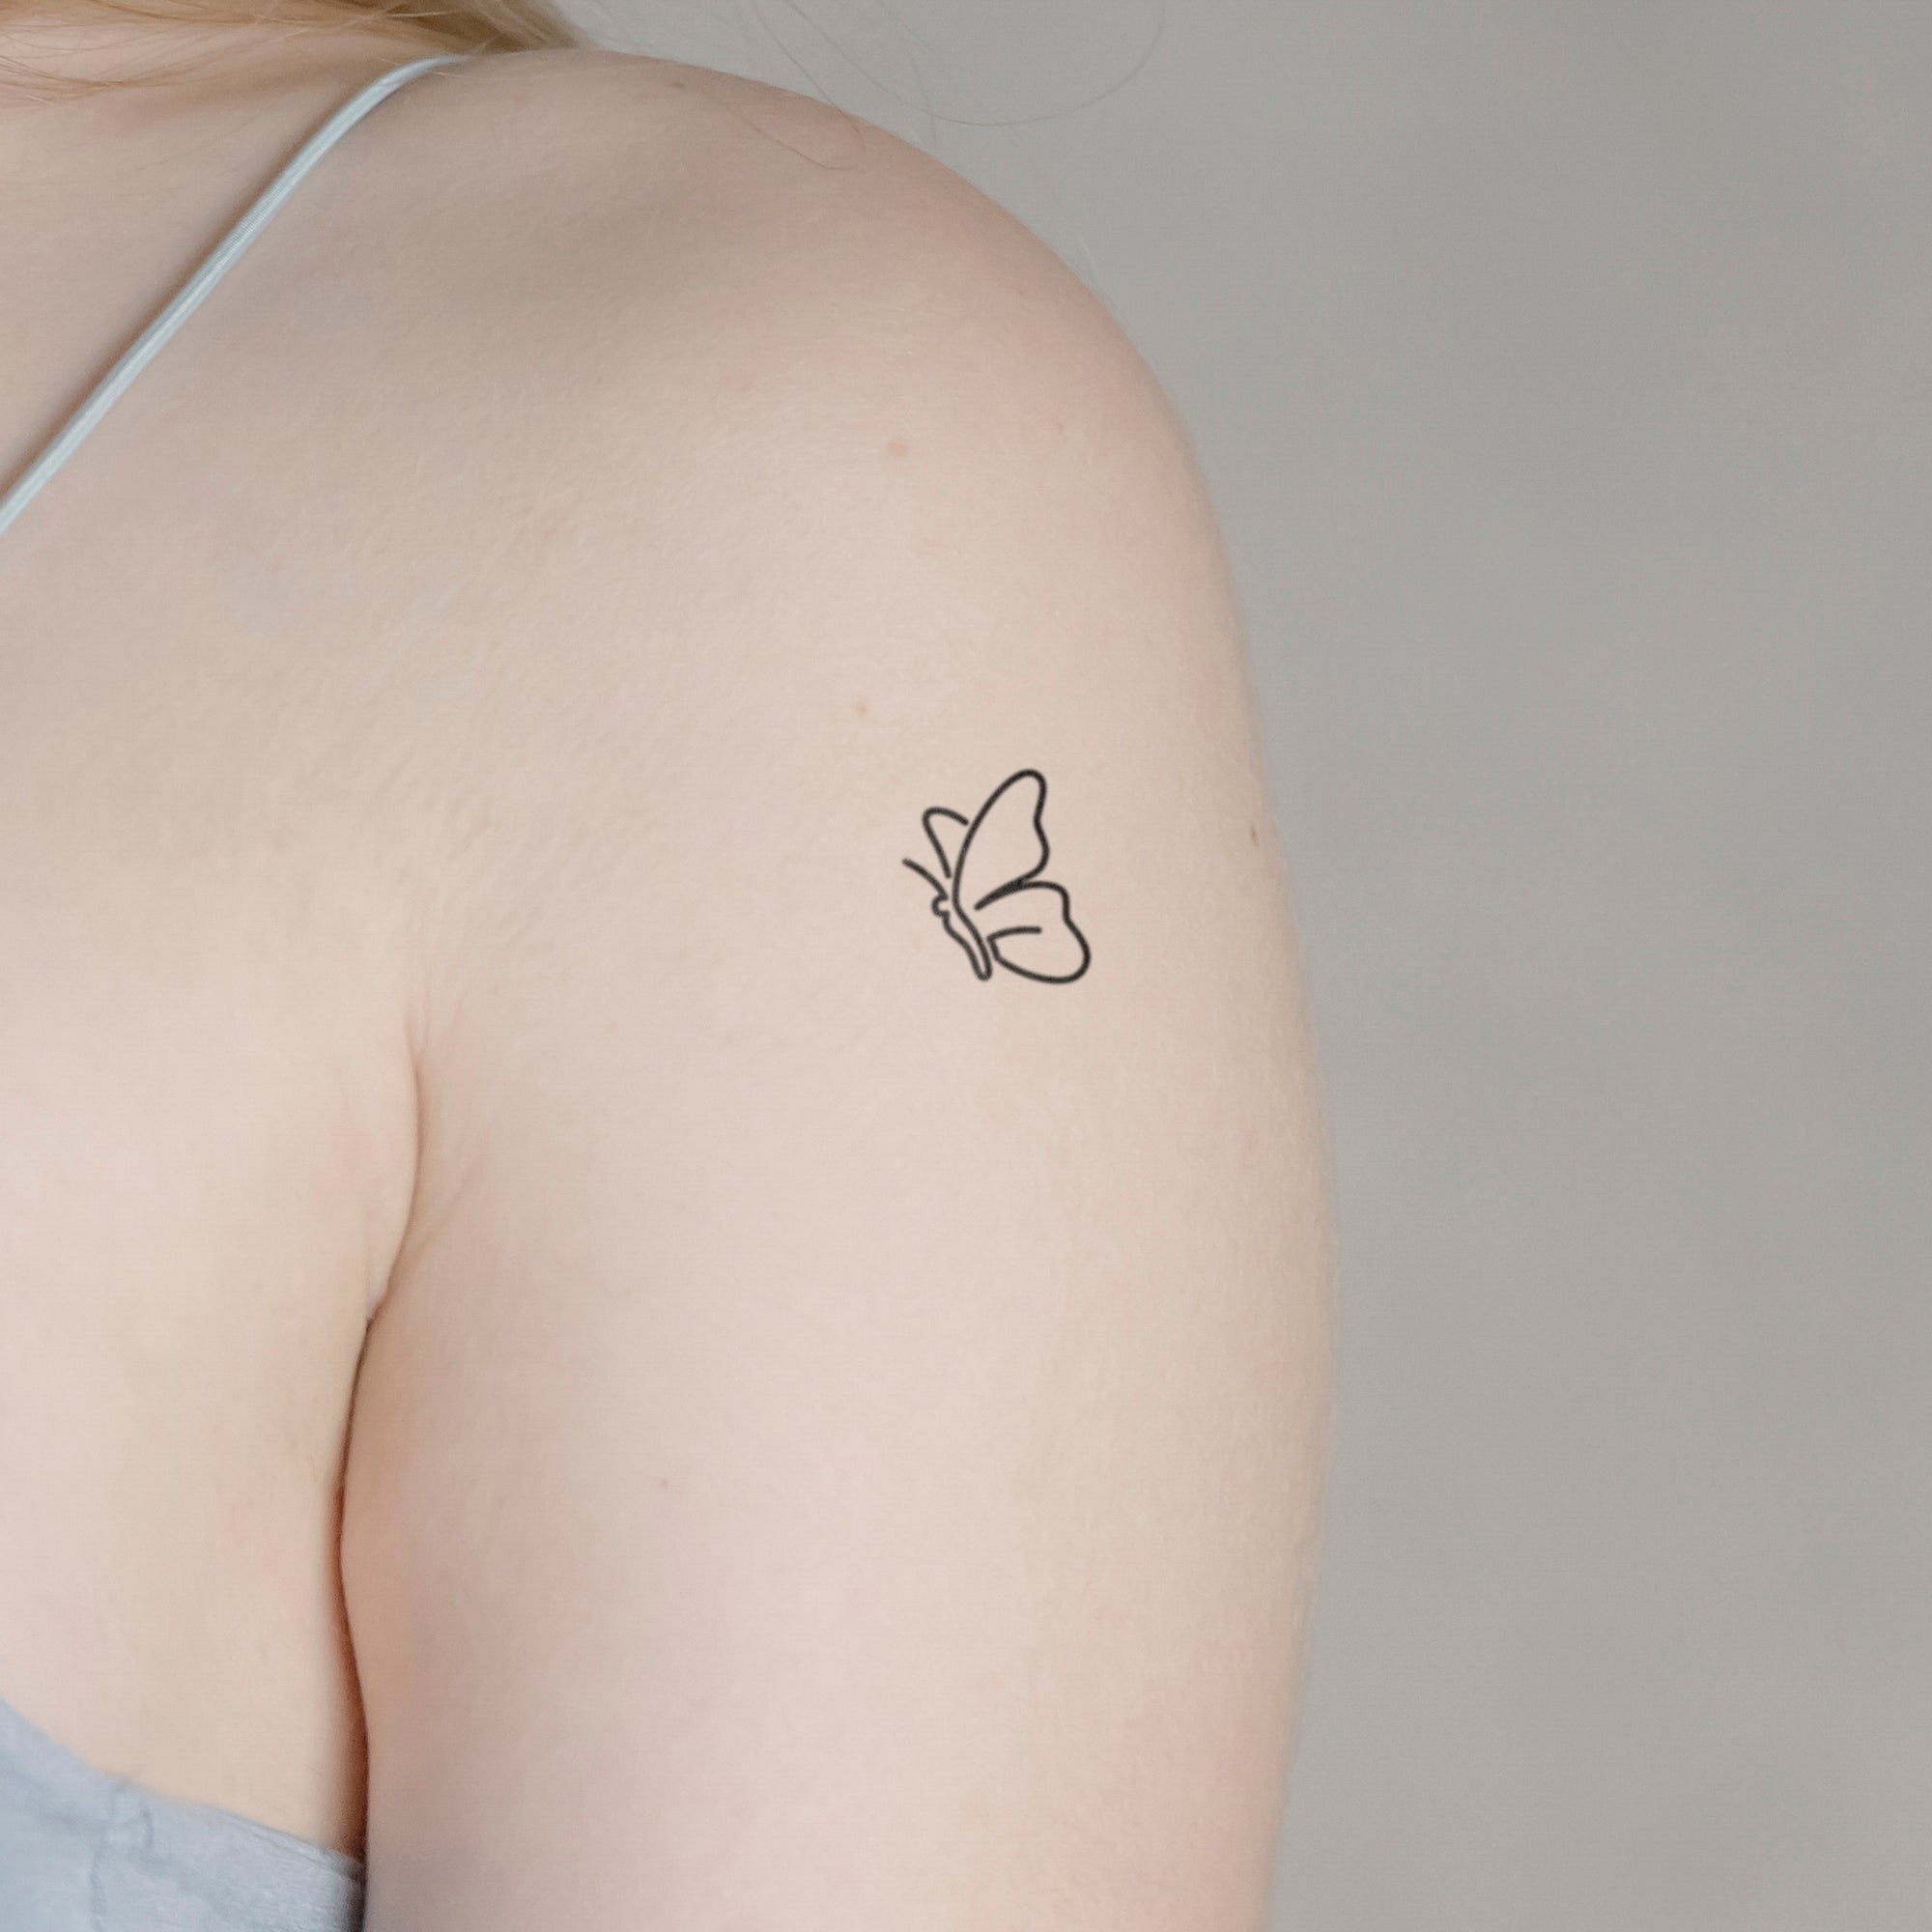 Abstrakter Schmetterling Tattoo von minink, der Marke für temporäre Tattoos.